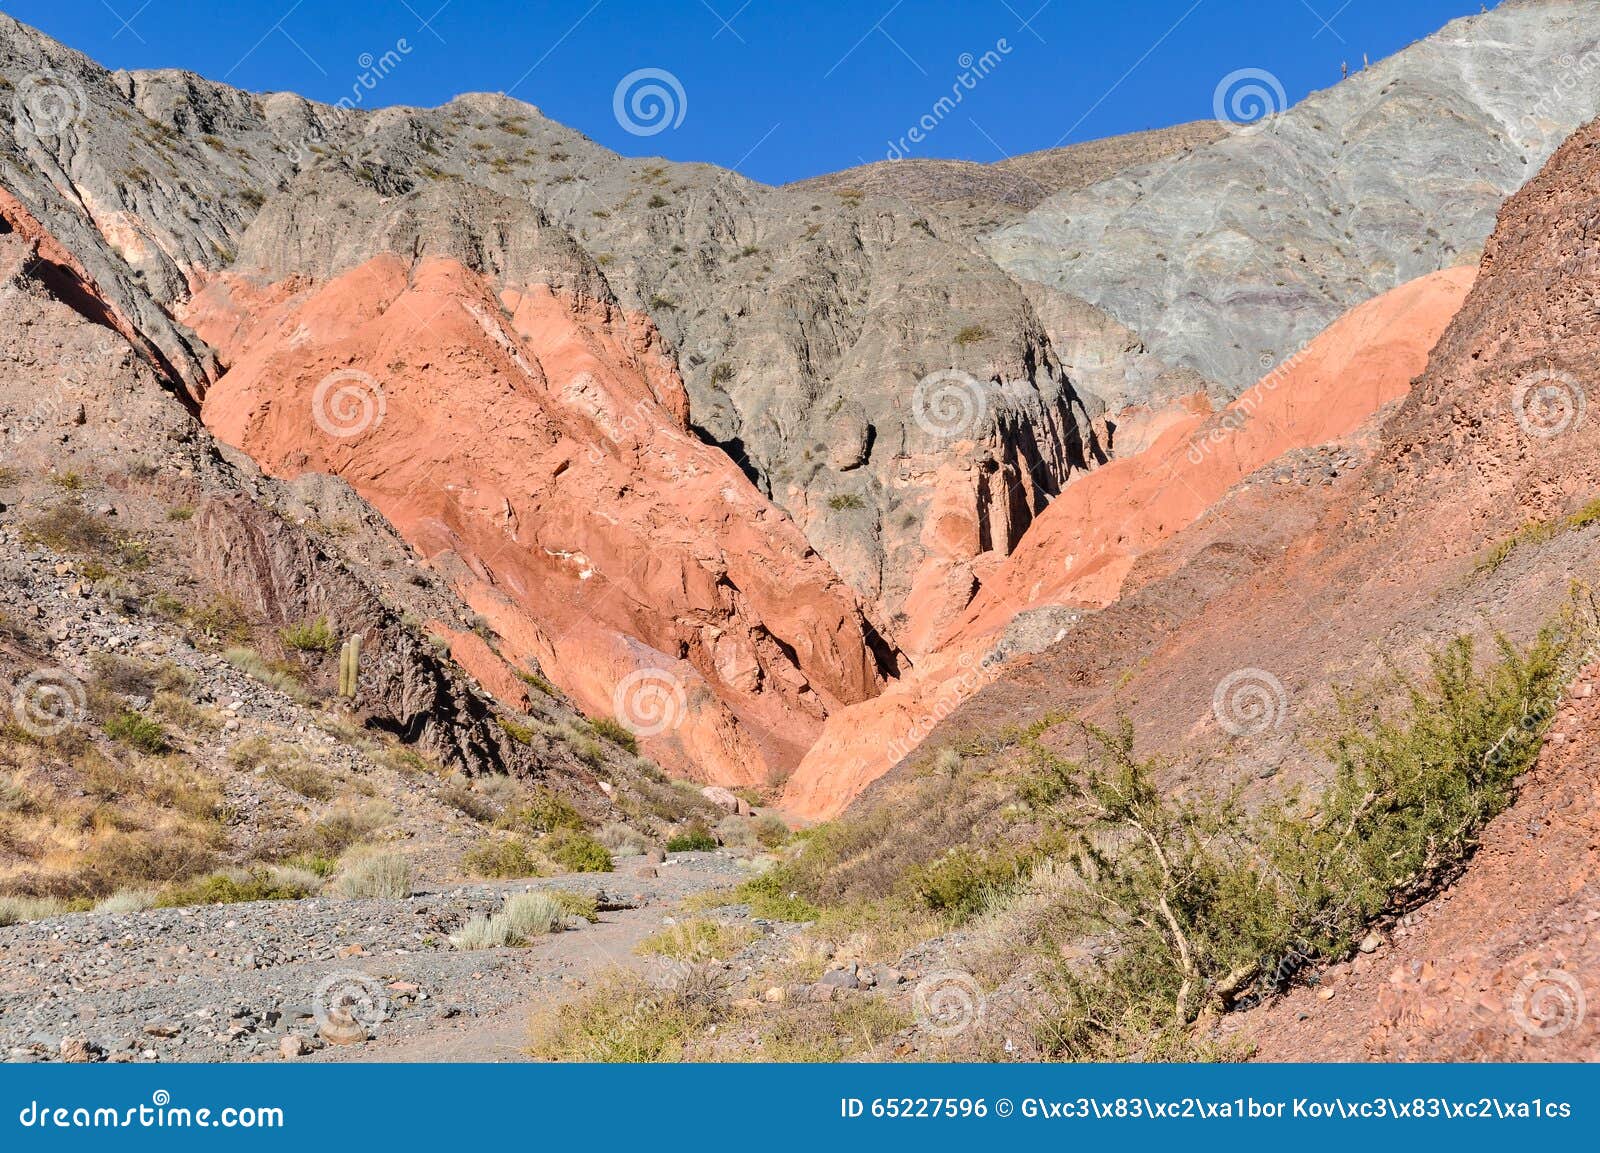 cerro de los siete colores, purnamarca, argentina